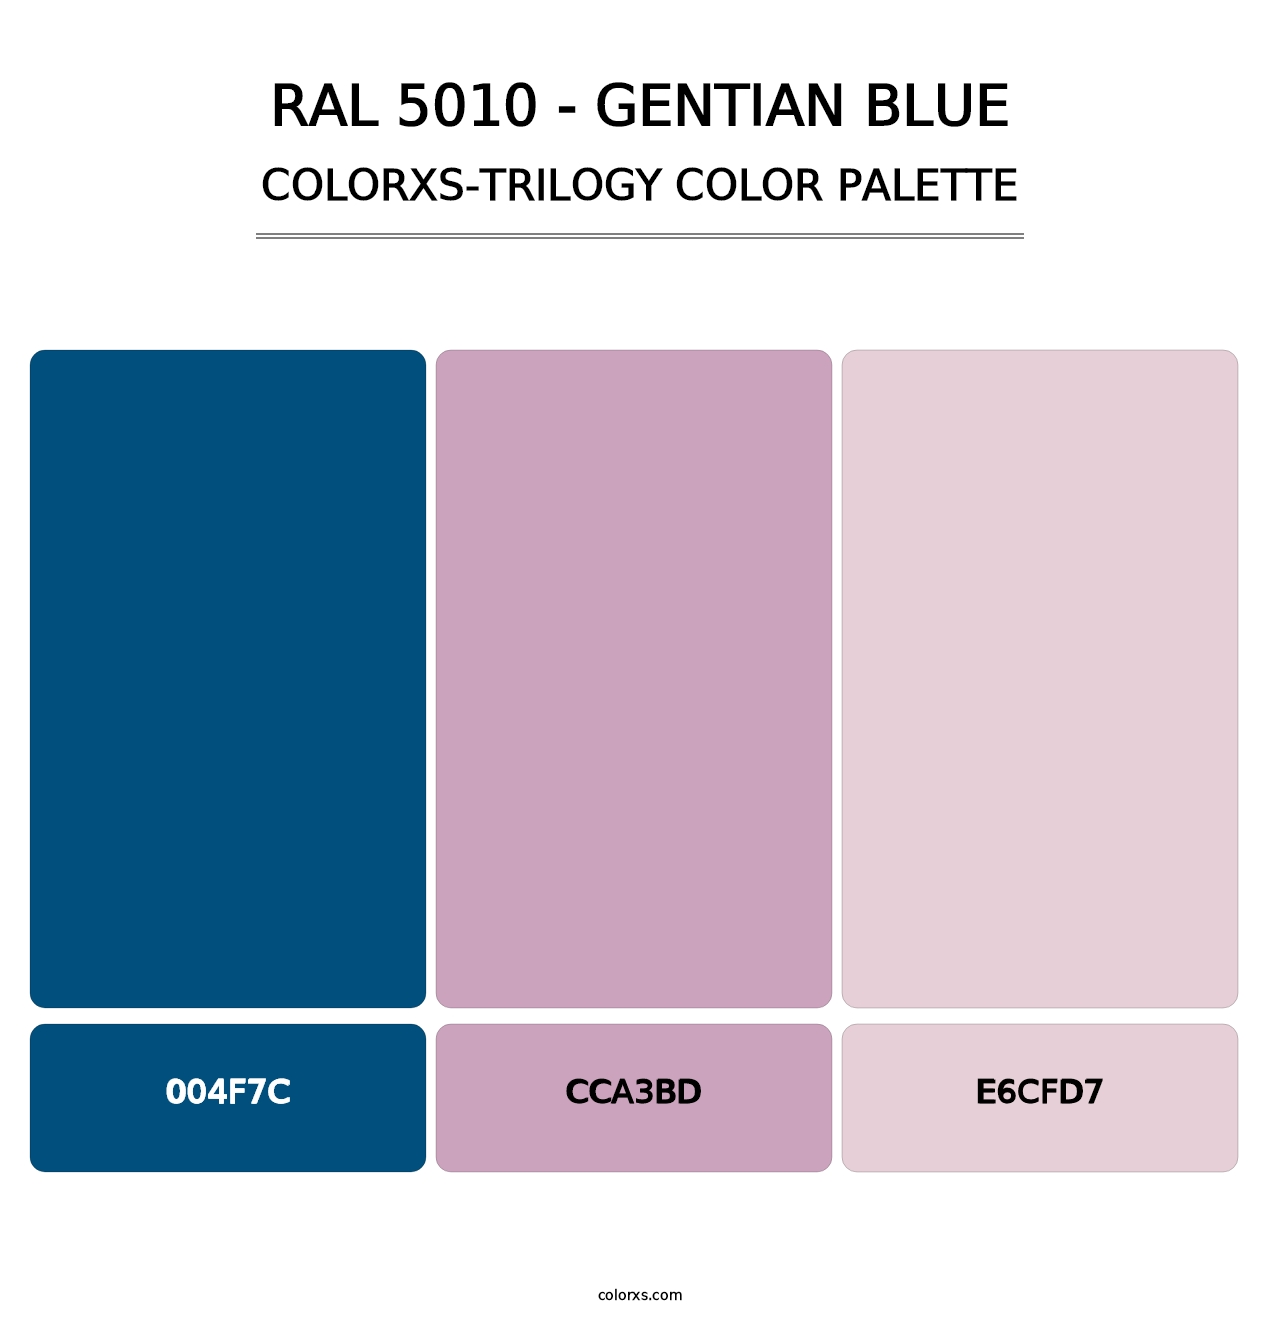 RAL 5010 - Gentian Blue - Colorxs Trilogy Palette